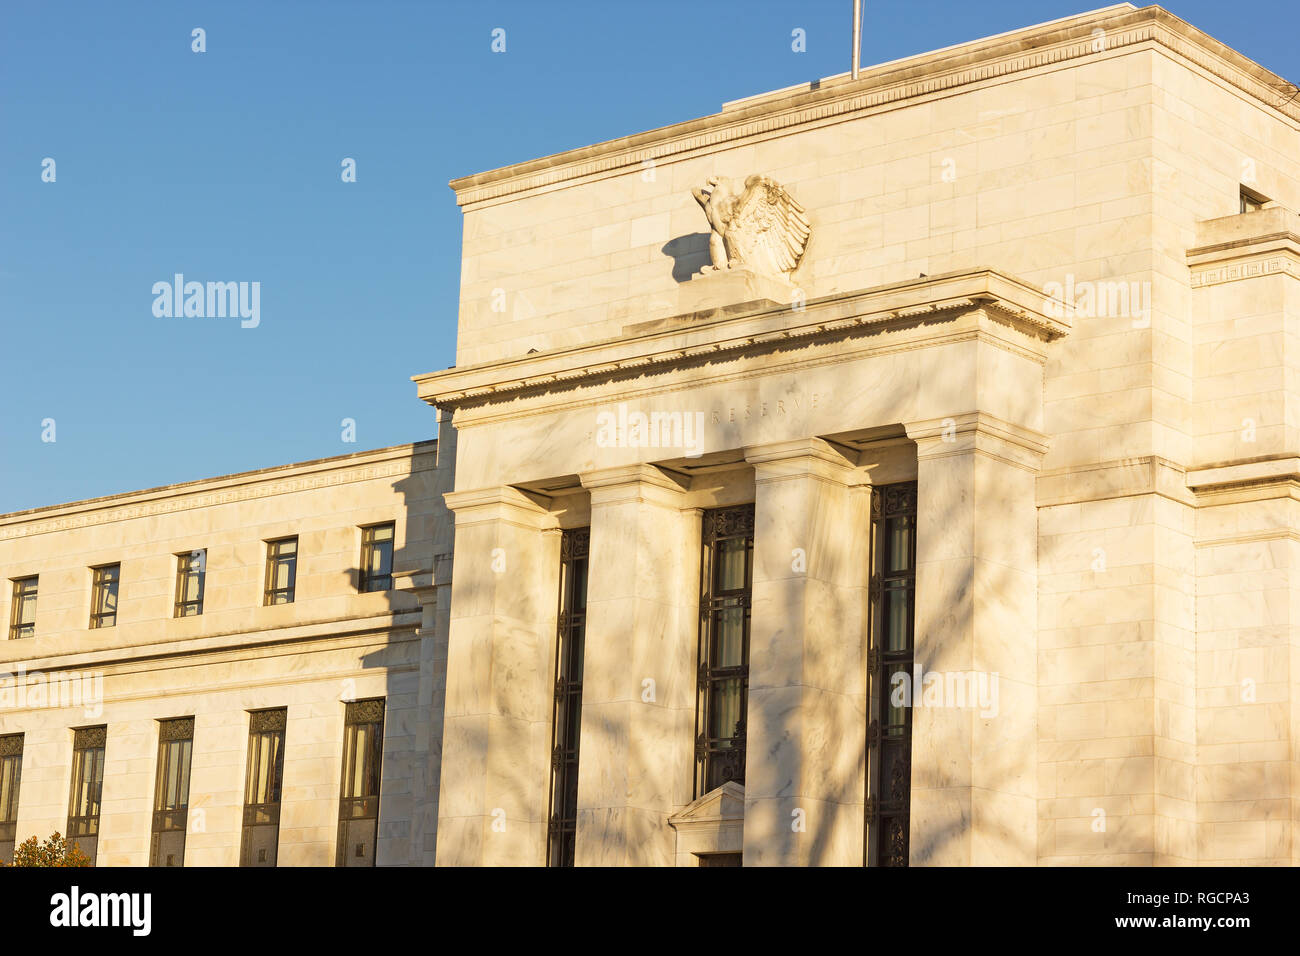 Le quartier général de la Réserve fédérale des États-Unis à Washington DC, USA. Bâtiment d'Eccles est un exemple de classicisme dépouillé l'architecture. Banque D'Images